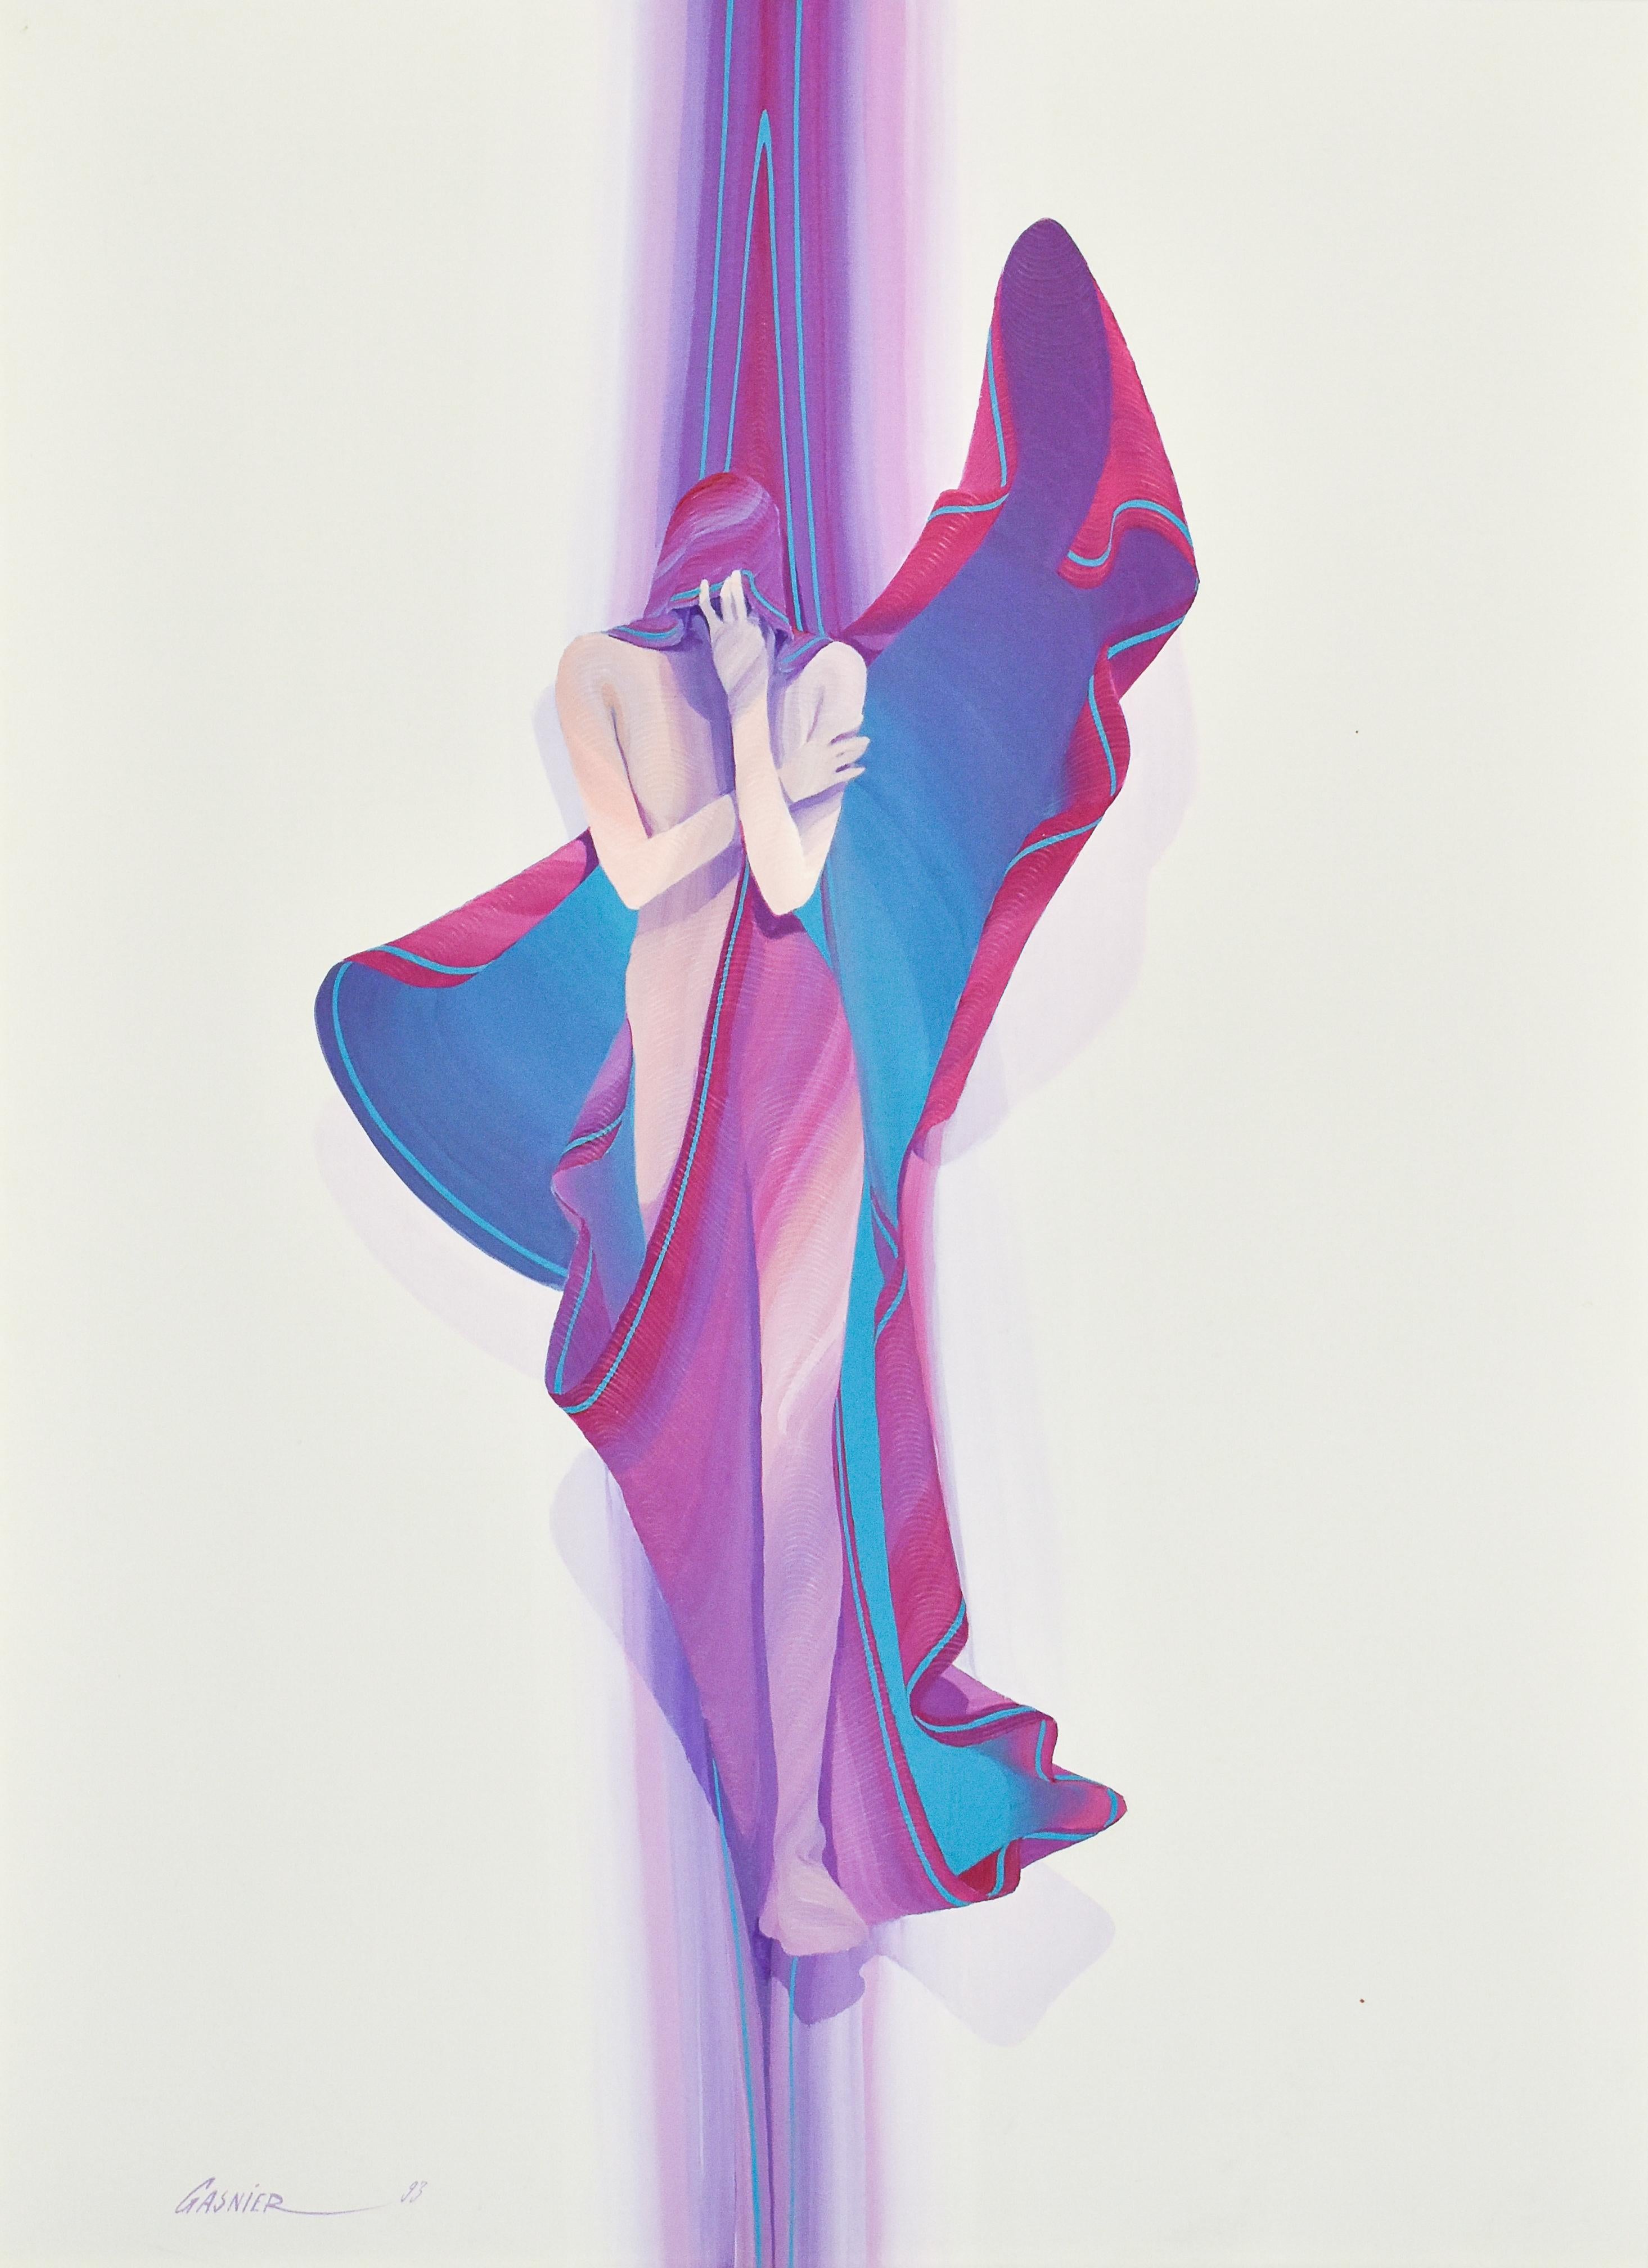 Femme en robe violette - Oil paint on canvas - Jean Loup Gasnier